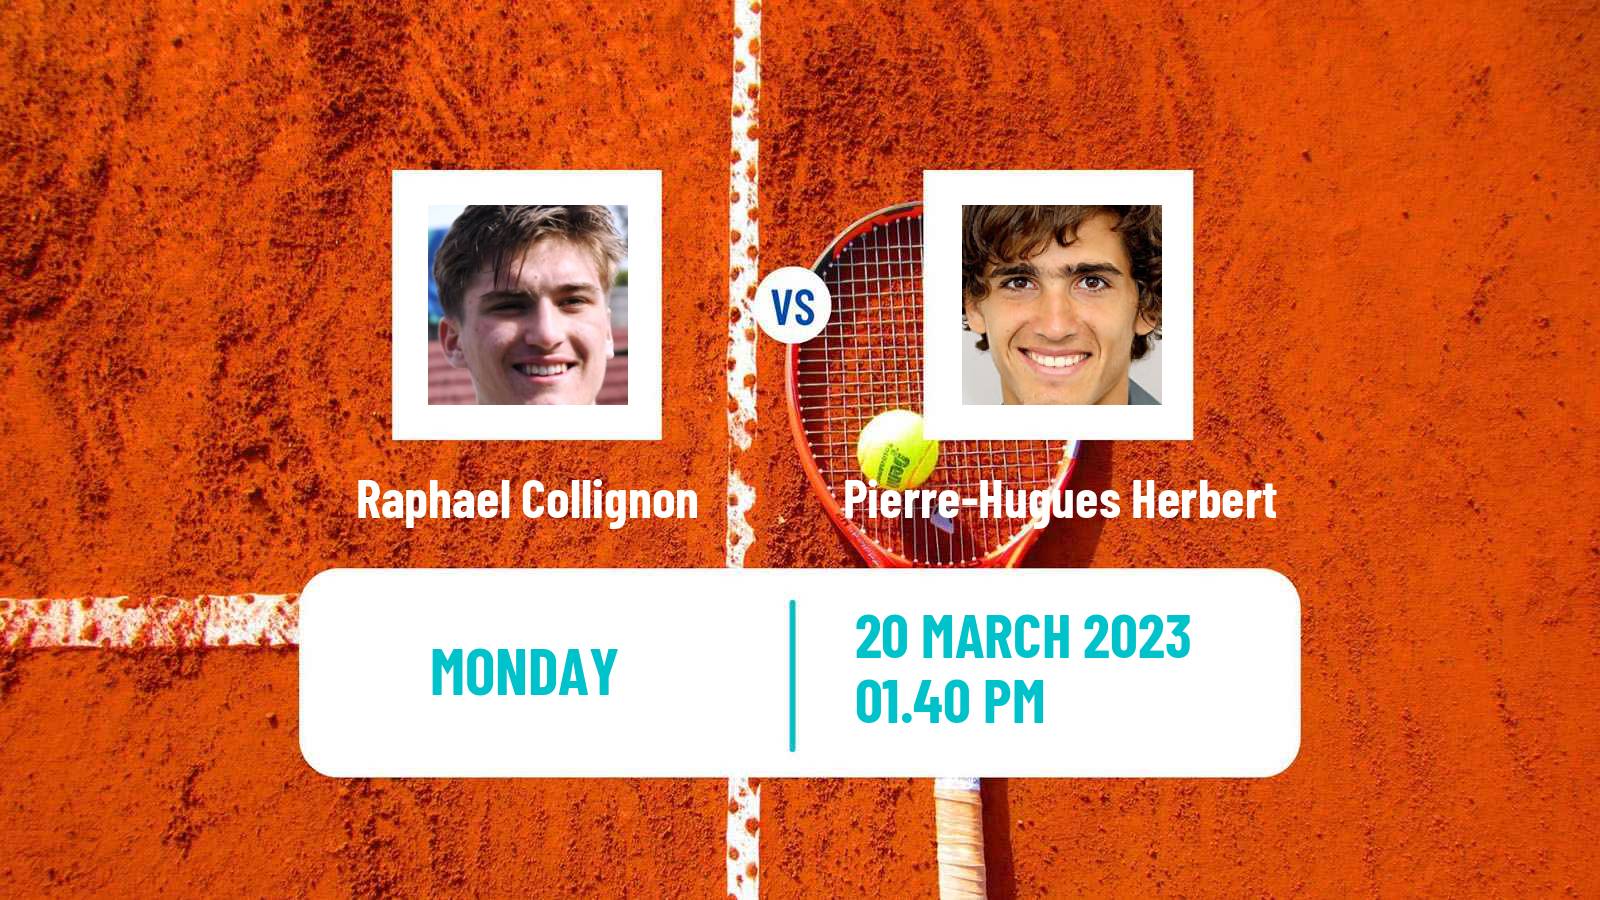 Tennis ATP Challenger Raphael Collignon - Pierre-Hugues Herbert